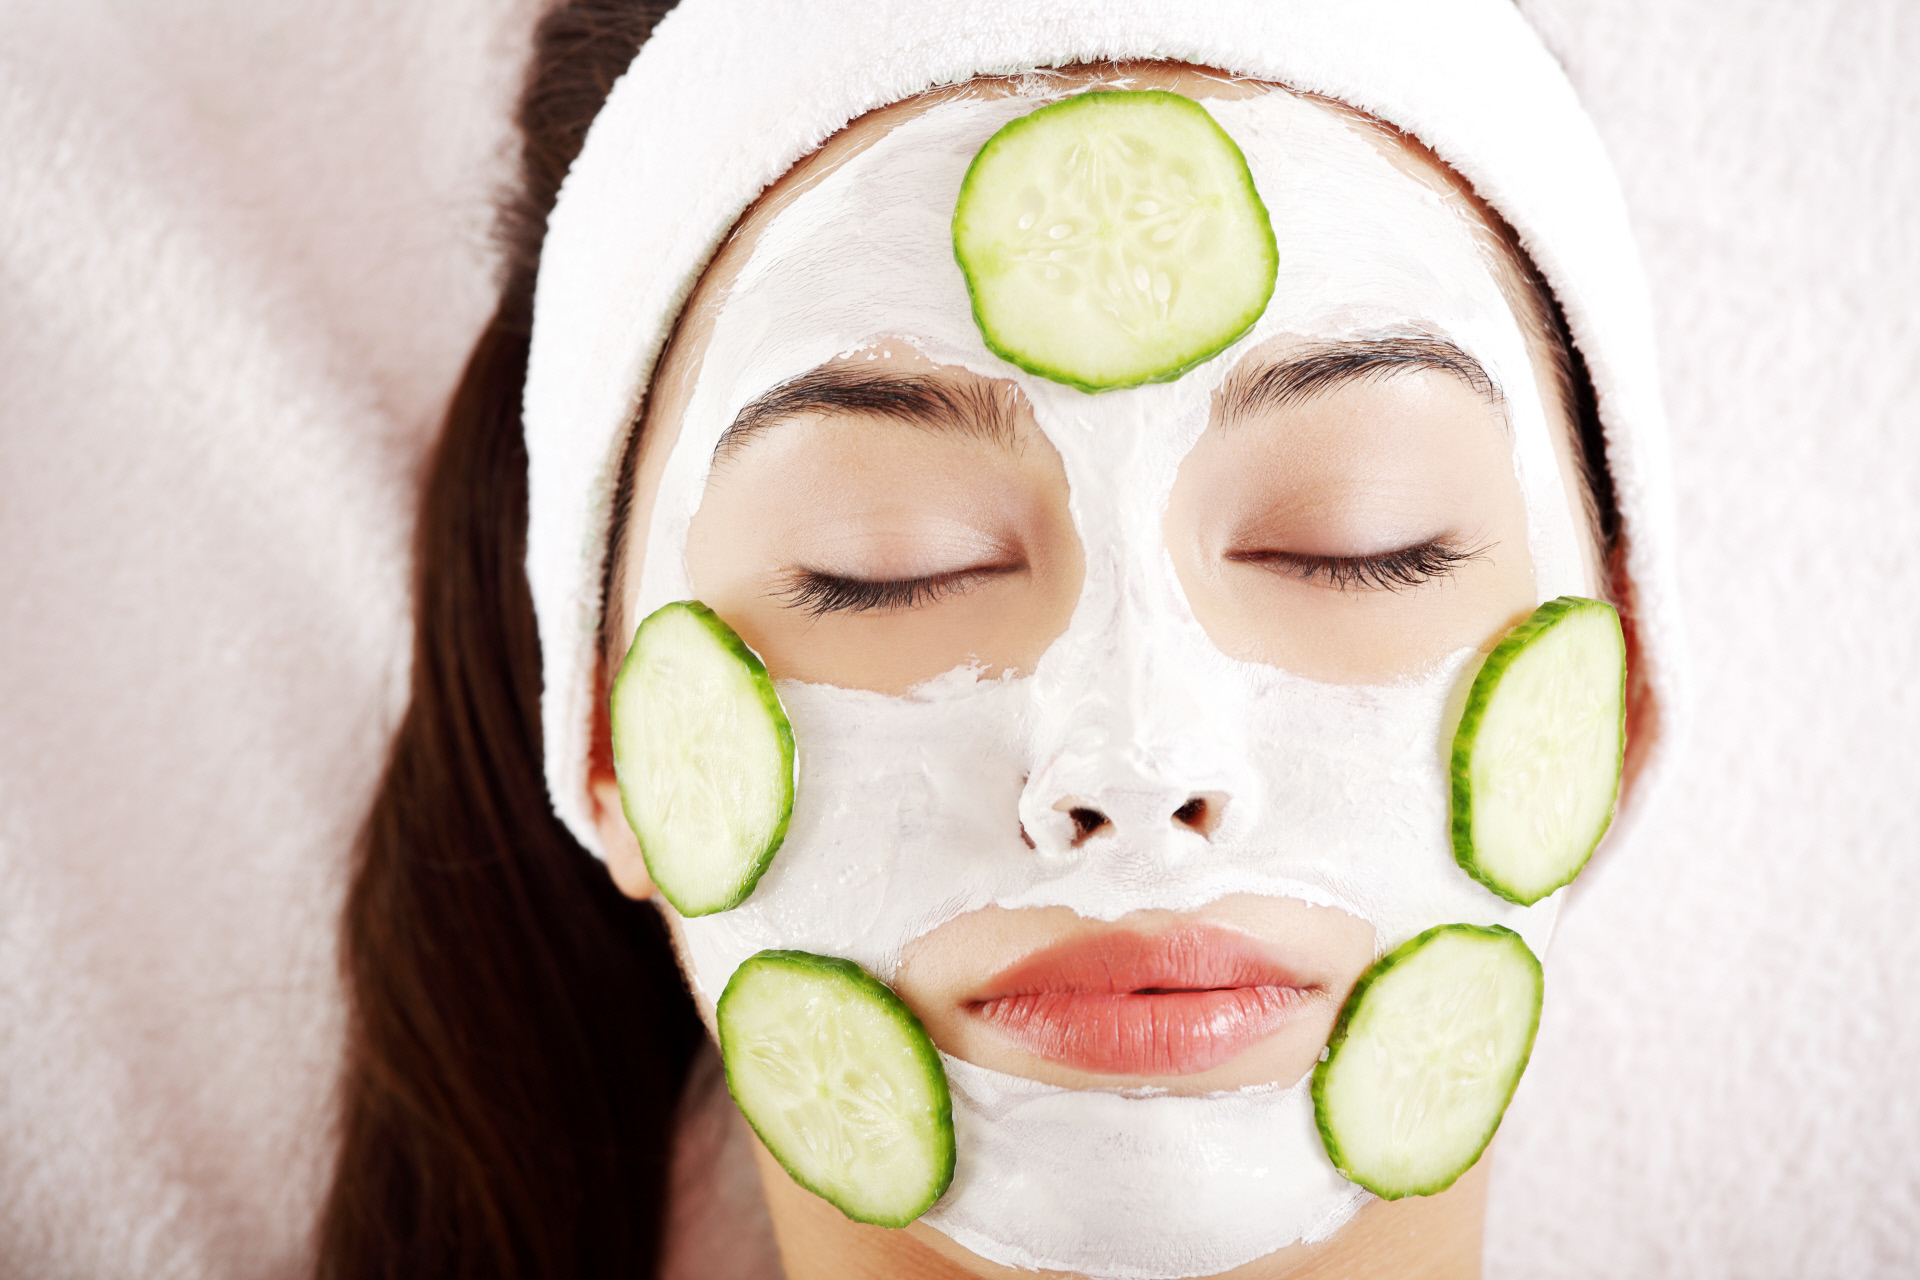 Las mascarillas caseras pueden ser una buena solución y barata para tu piel, siempre que elijas los ingredientes más seguros.